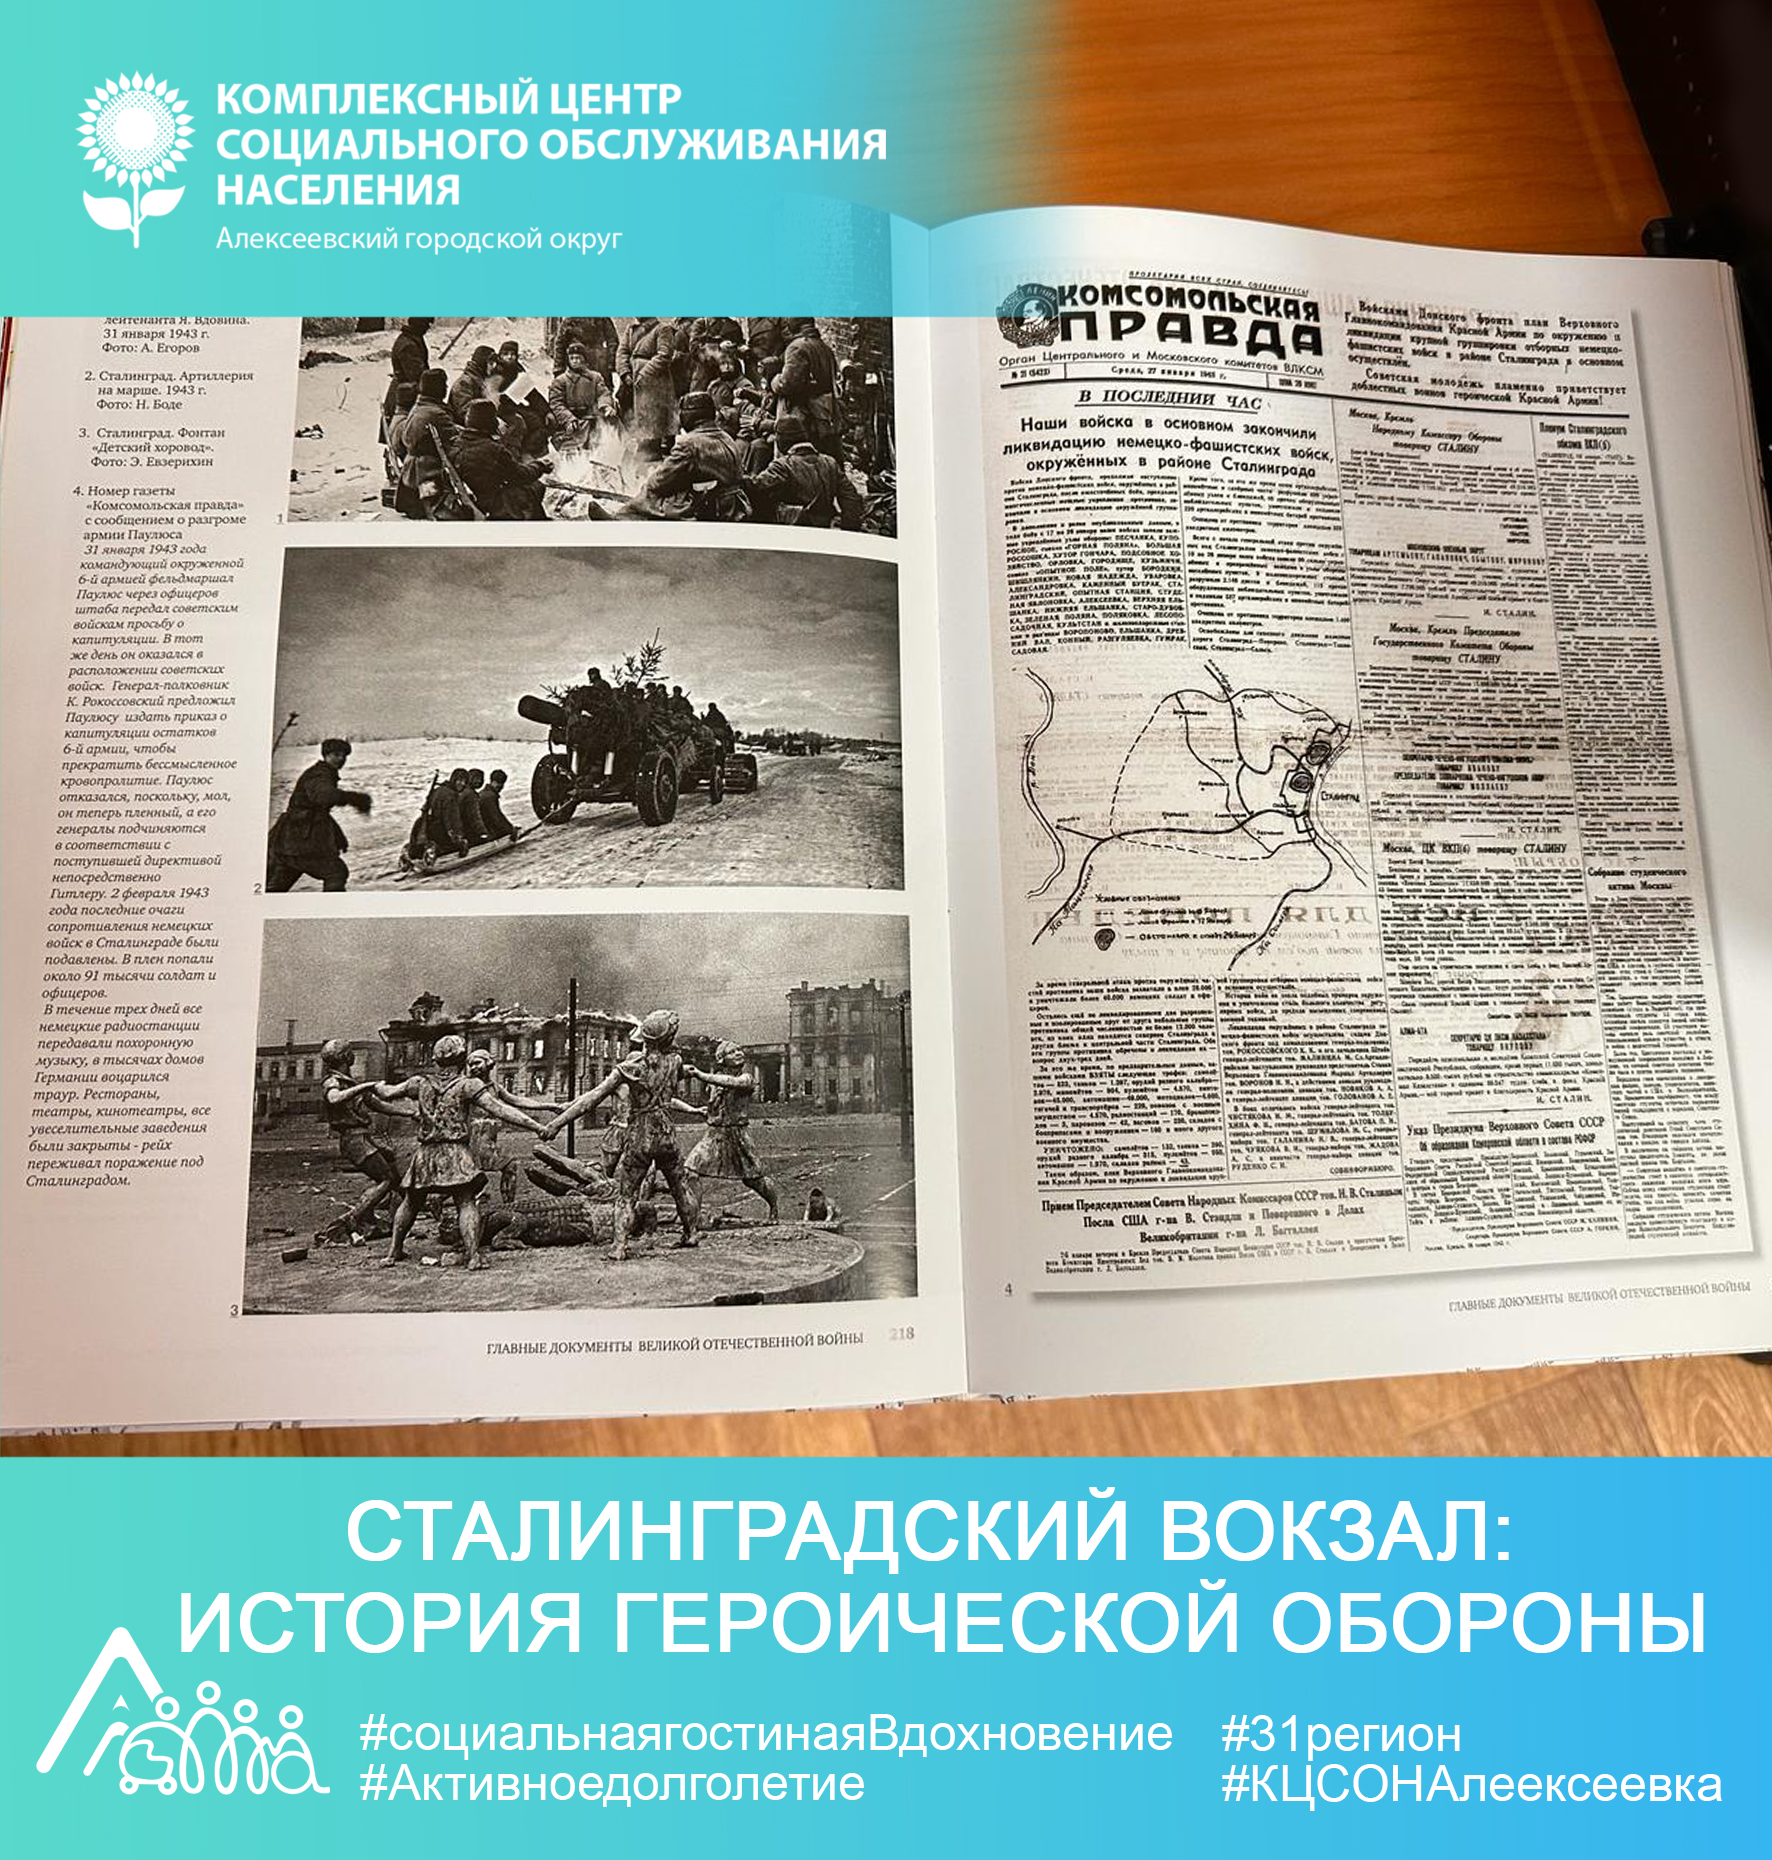 Сталинградский вокзал: история героической обороны.